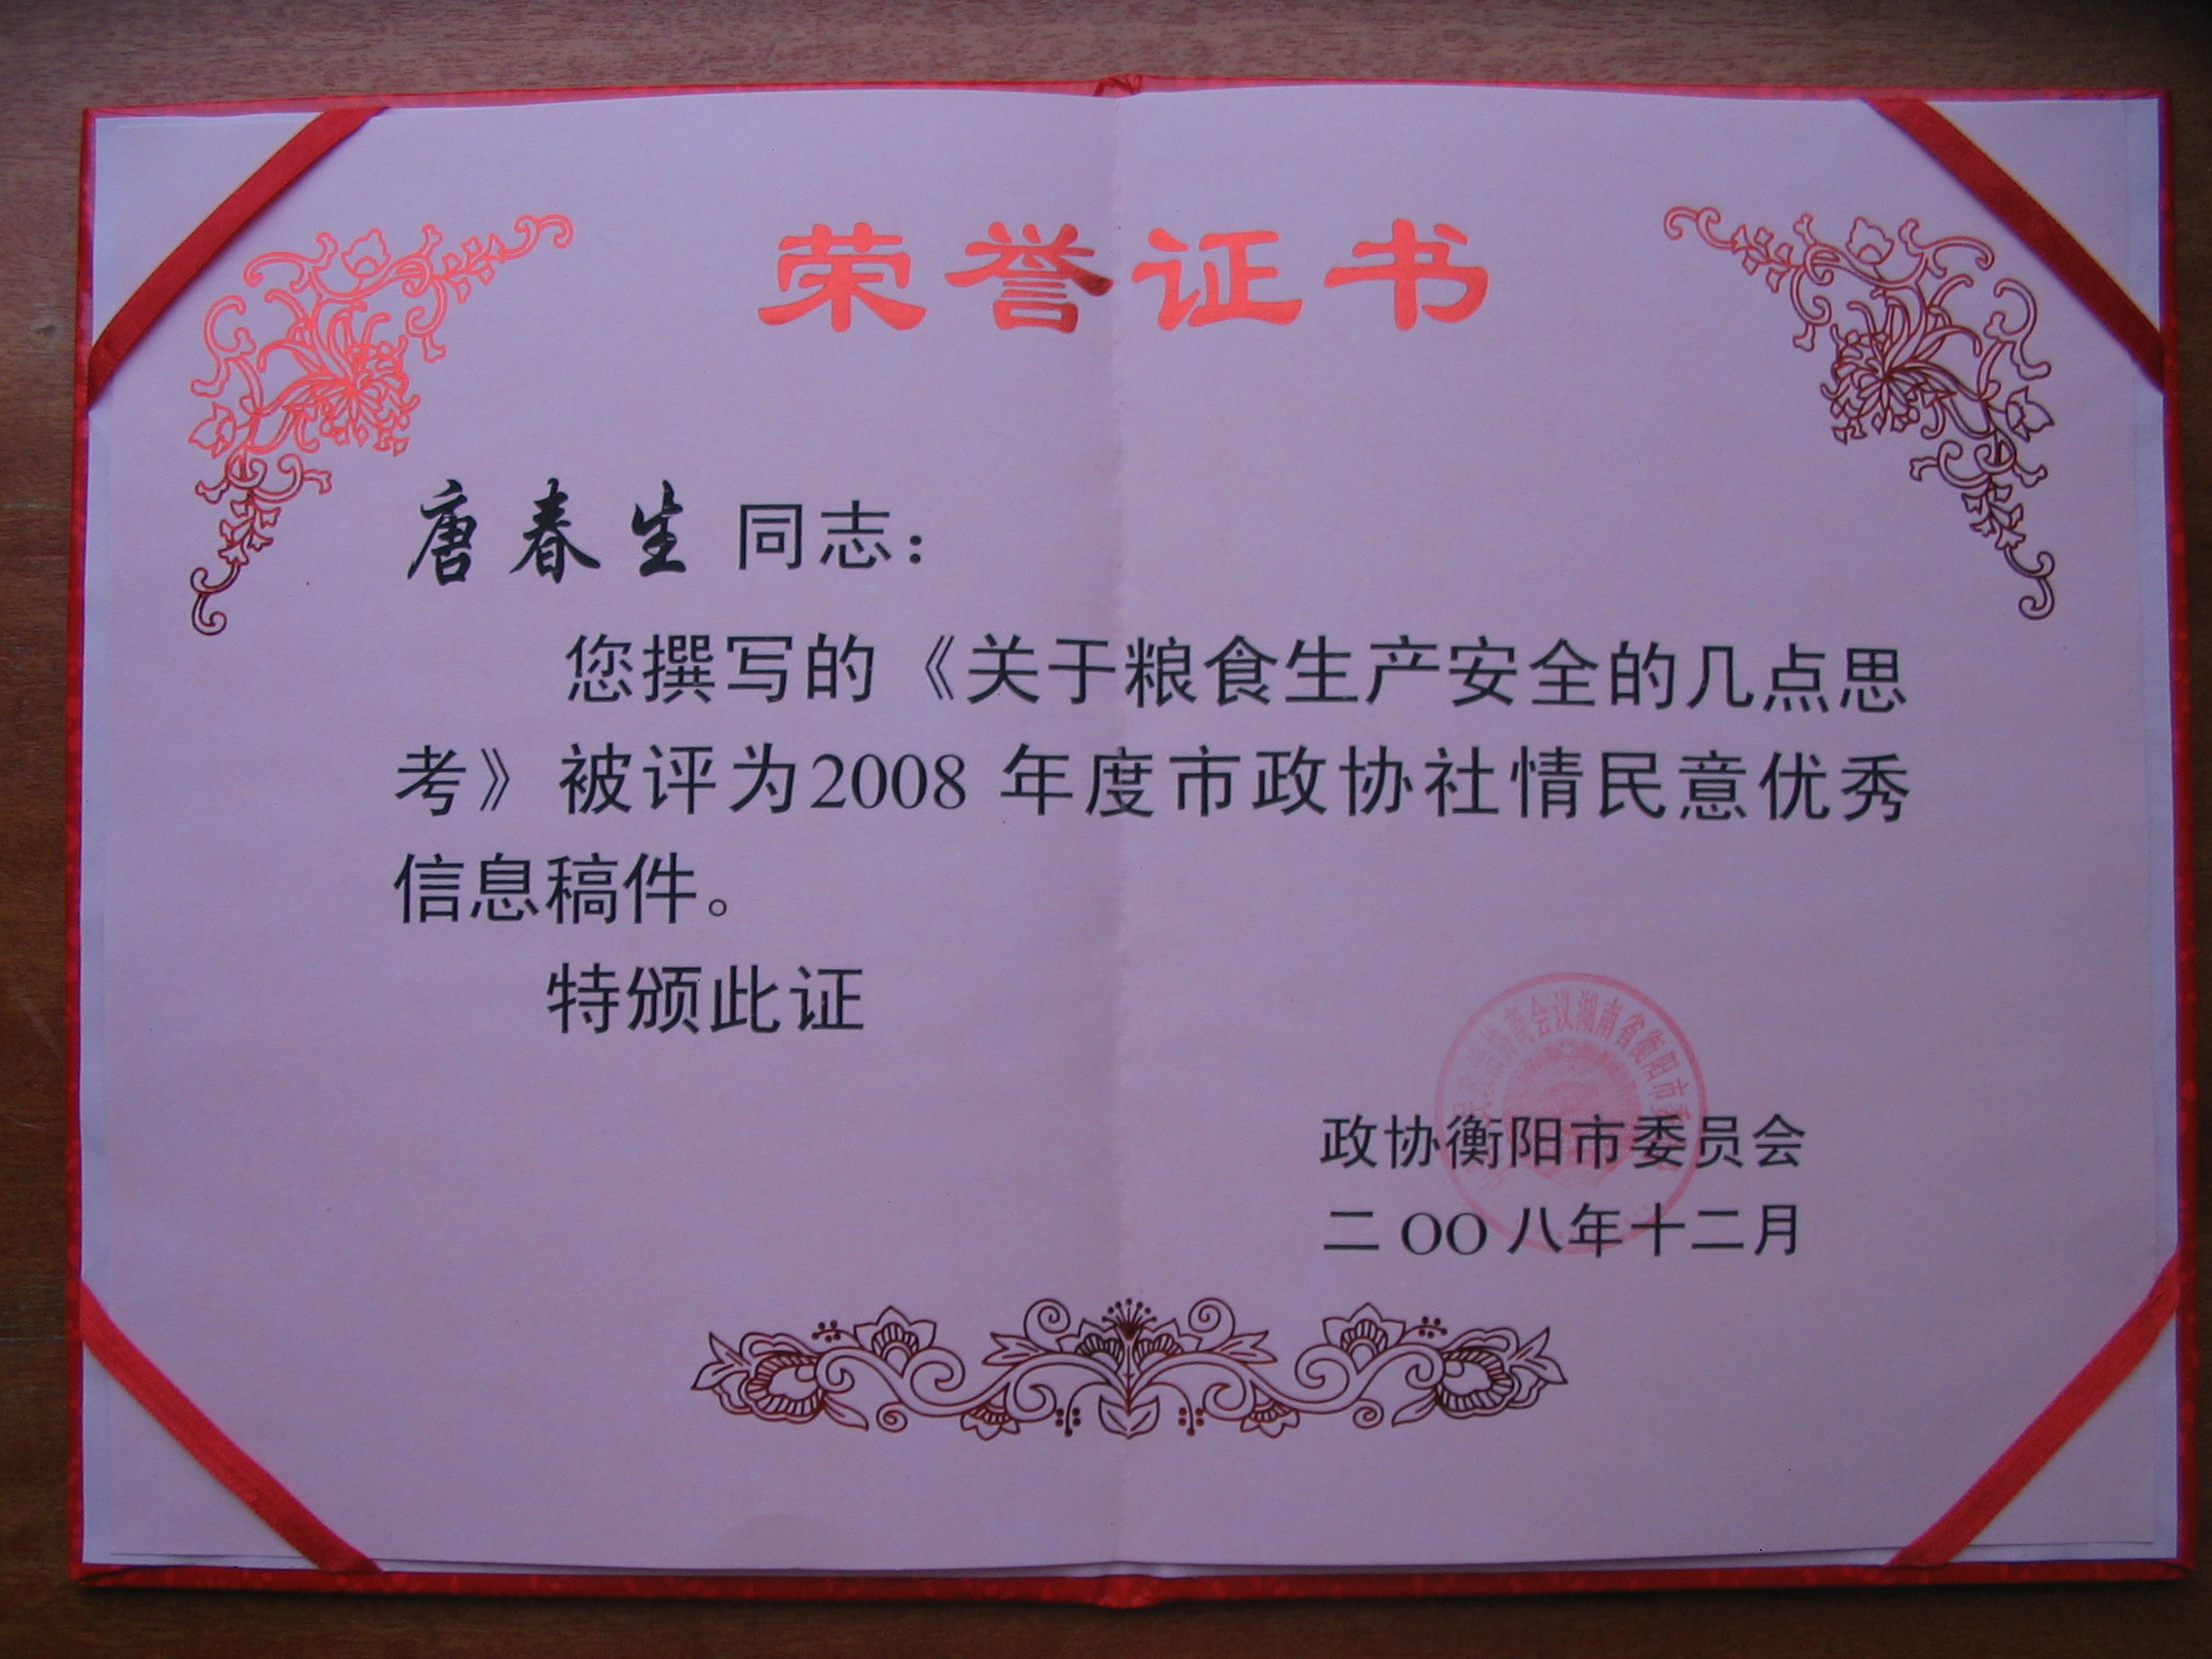 唐春生获2008年度衡阳市政协社情民意优秀信息稿件